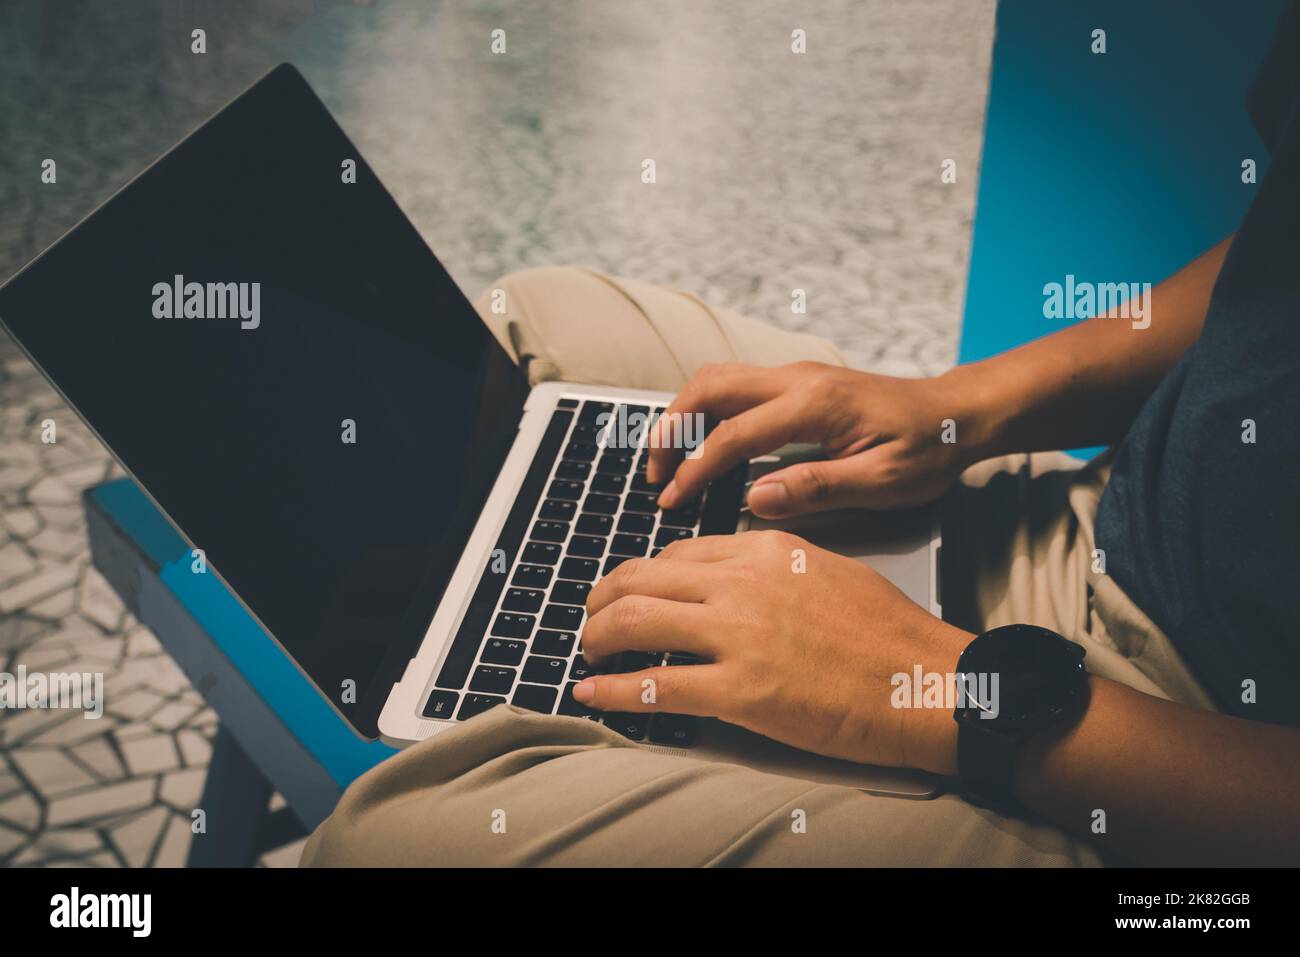 Ein Mann, der ein Notebook für die Kommunikation mit Geschäftstechnologien verwendet, mit dem er arbeitet, schreibt und sich mit dem Internet verbindet, während er ein drahtloses Netzwerk nutzt. Stockfoto